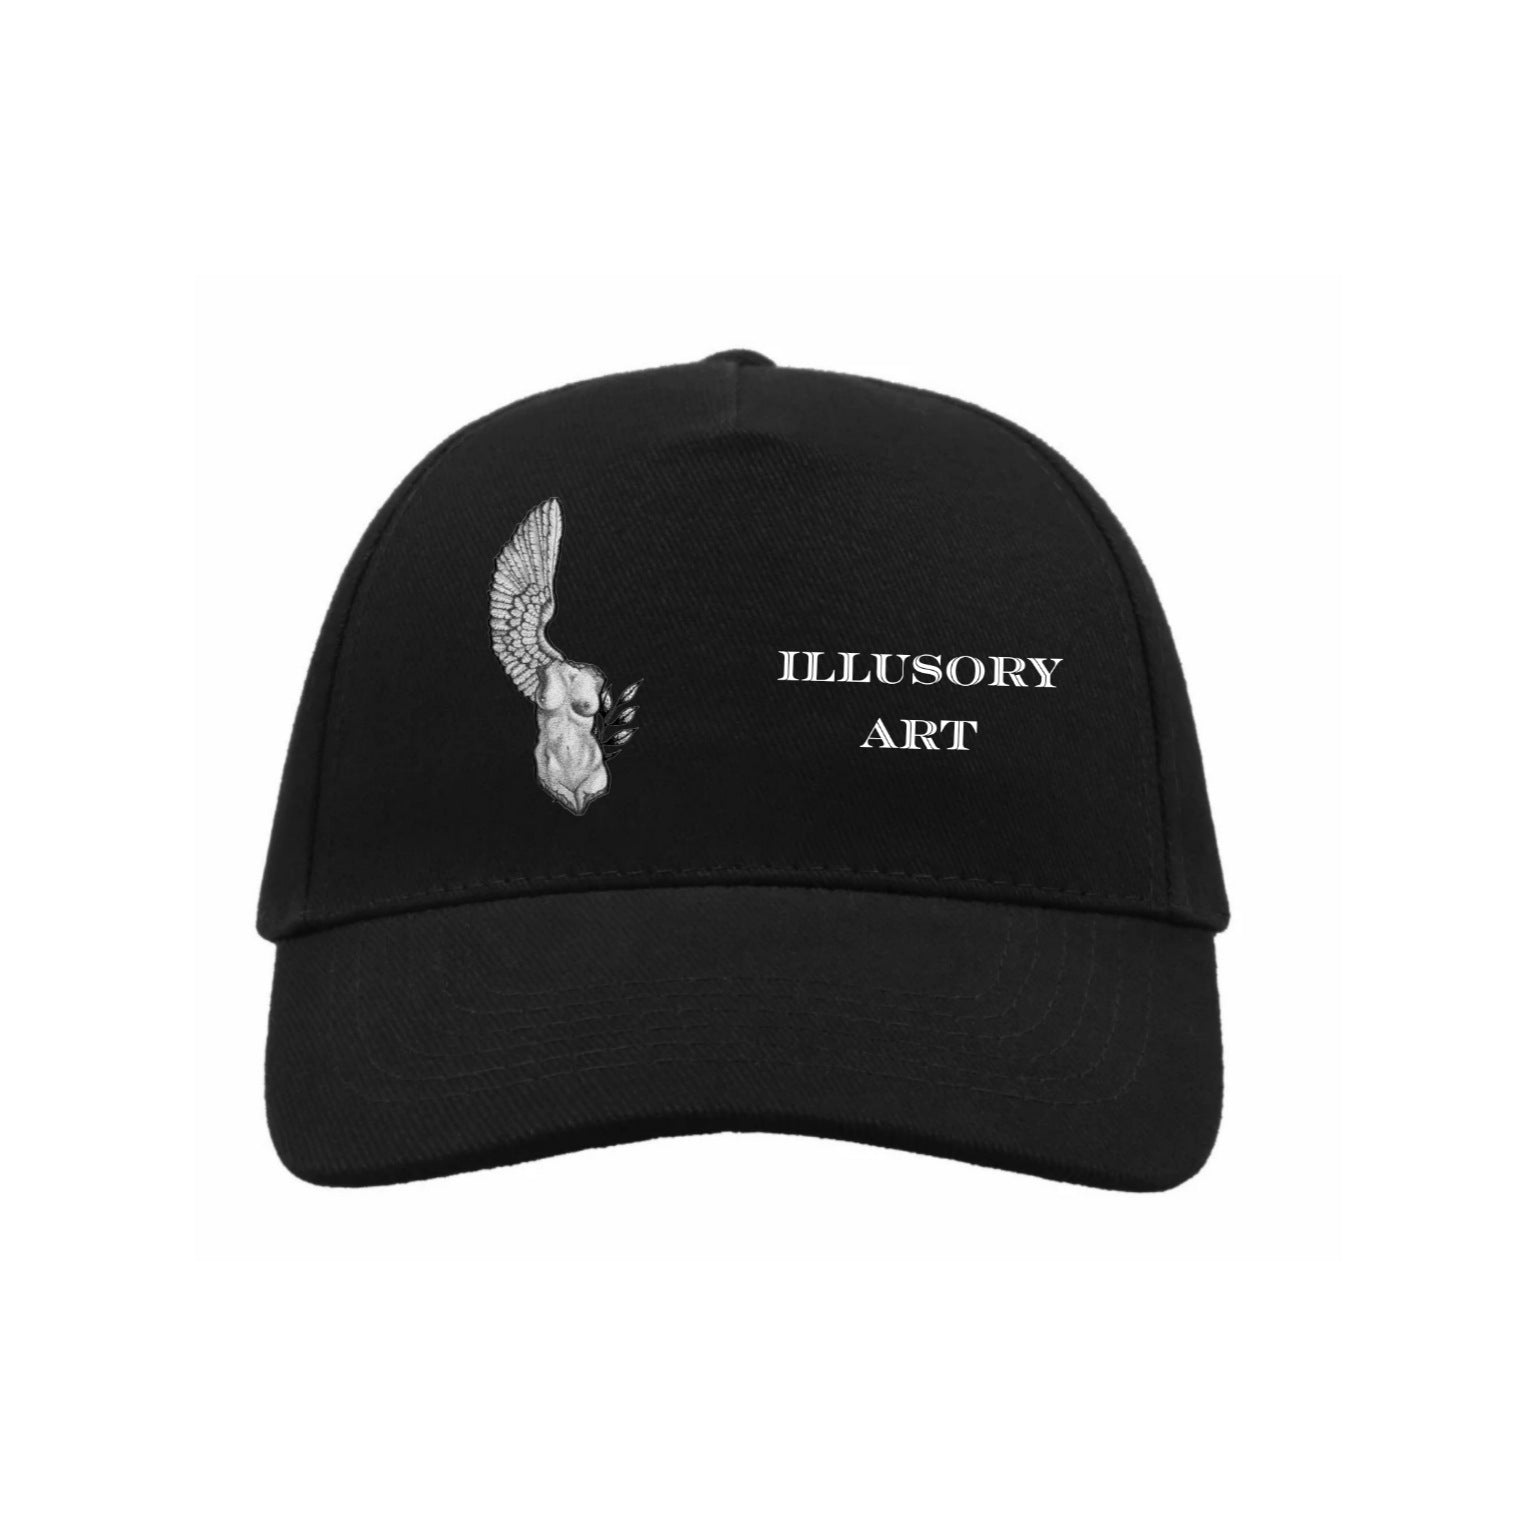 "ART" HAT